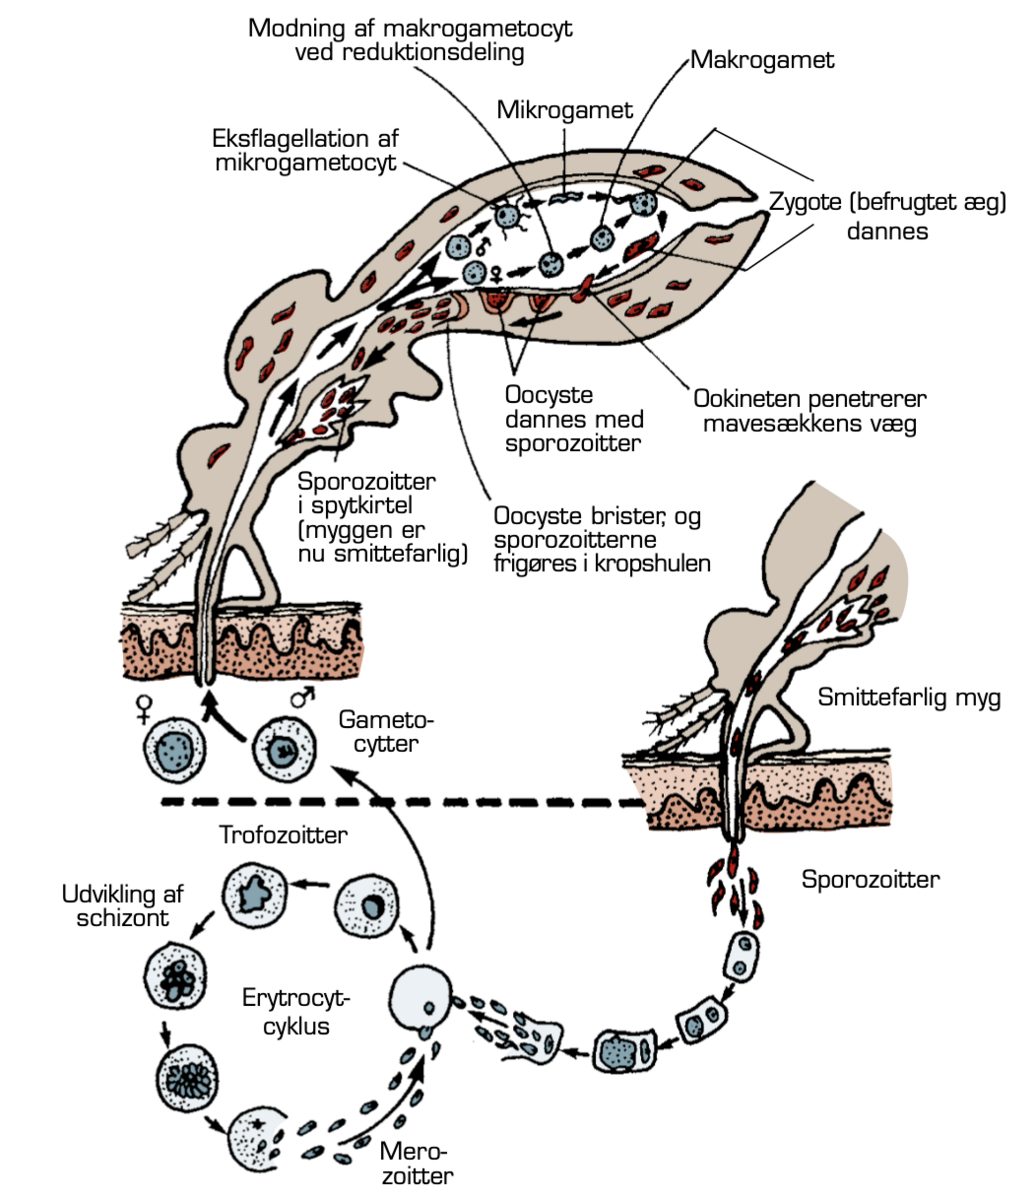 Malariaparasittens udviklingscyklus i mennesker og myg